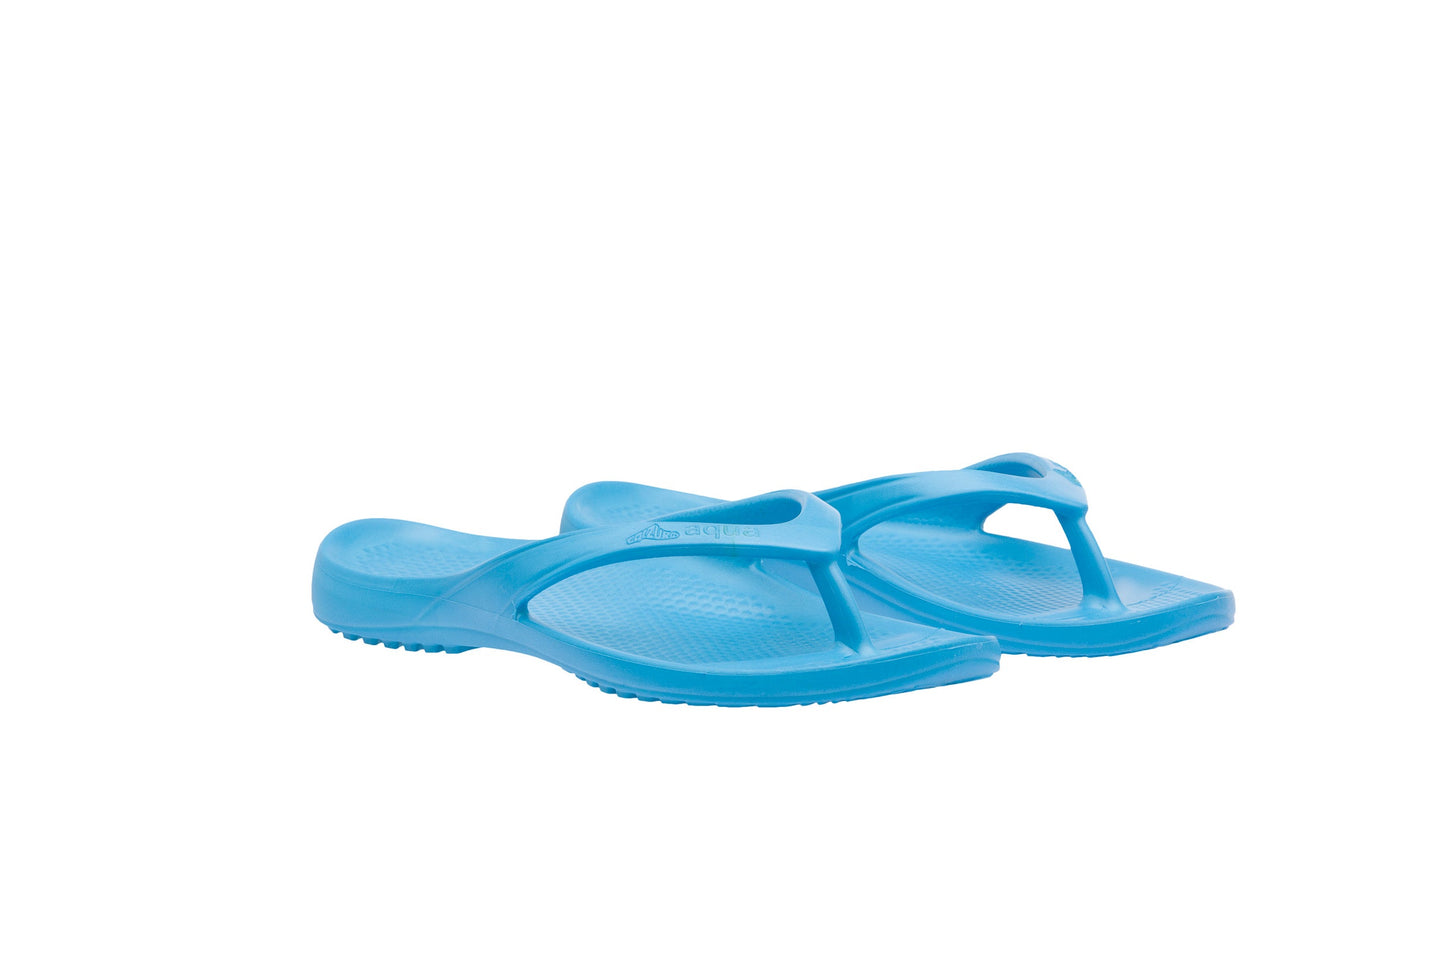 Calzuro Aqua Turquoise Flip Flops